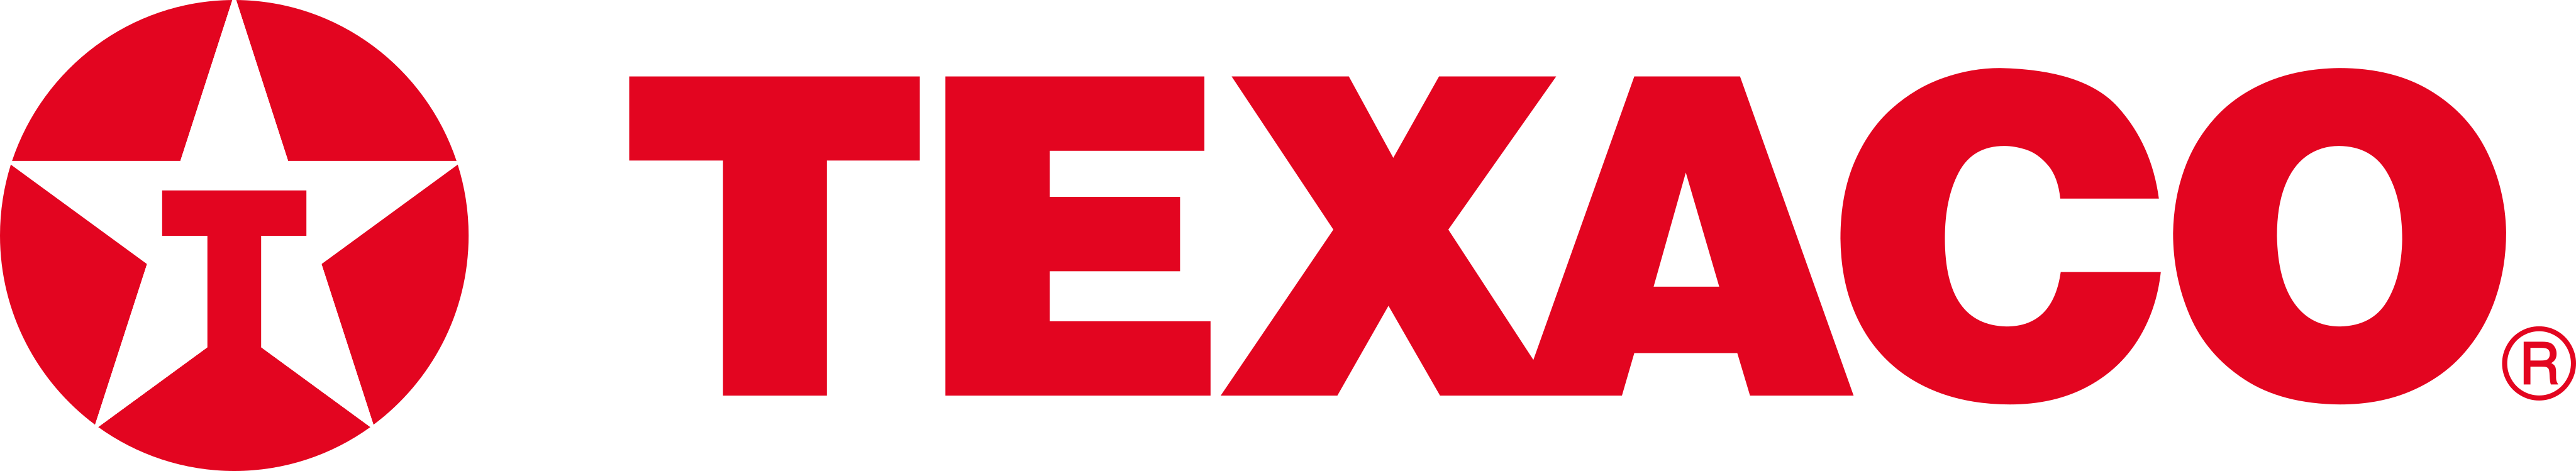 texaco logo - Texaco Logo